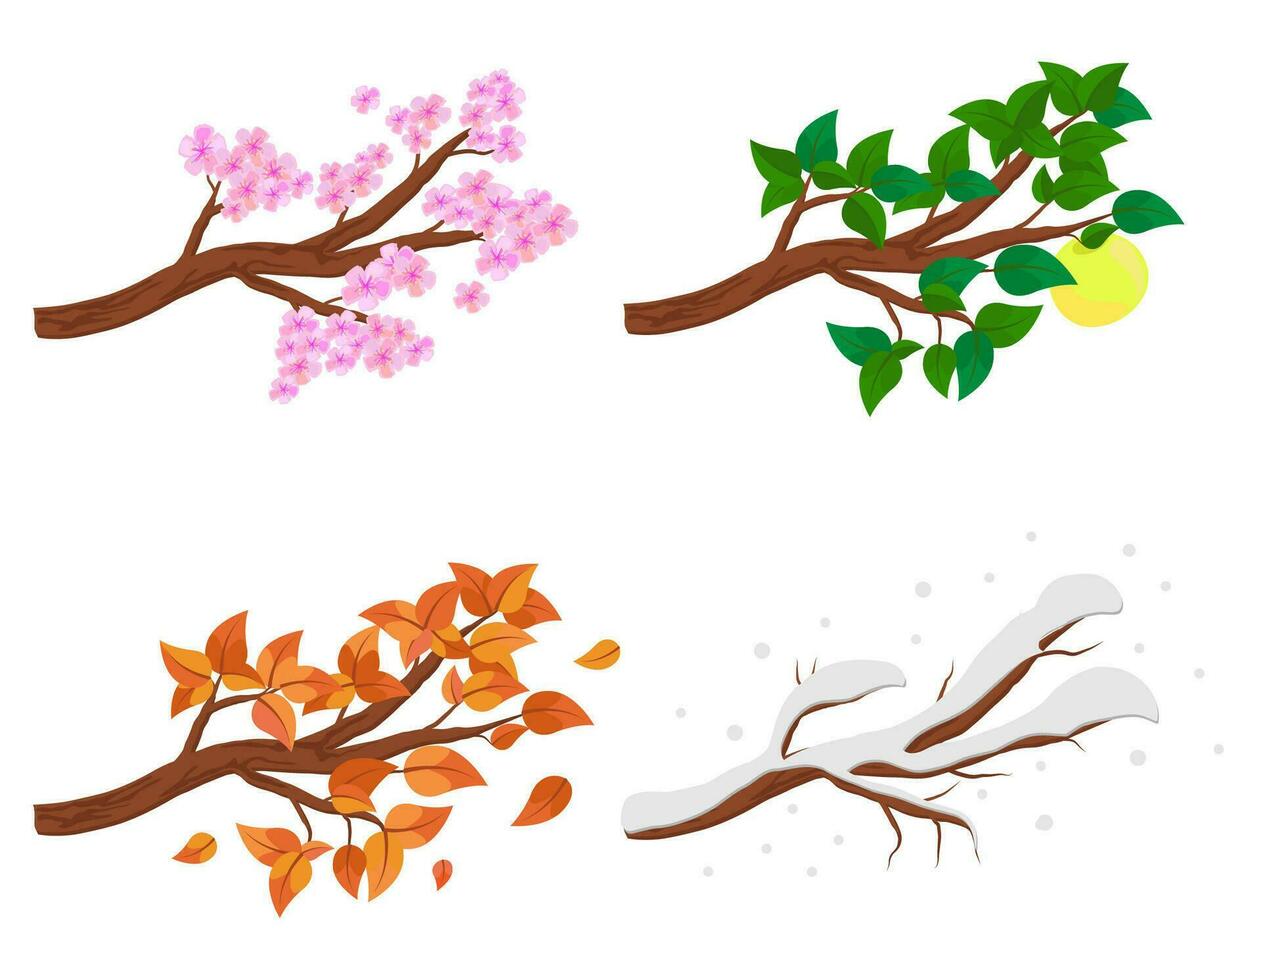 gren i fyra säsonger - vår, sommar, höst, vinter. samling av äpple träd isolerat på vit bakgrund. grön och orange löv, blommor och snö på de grenar isolerat. vektor illustration